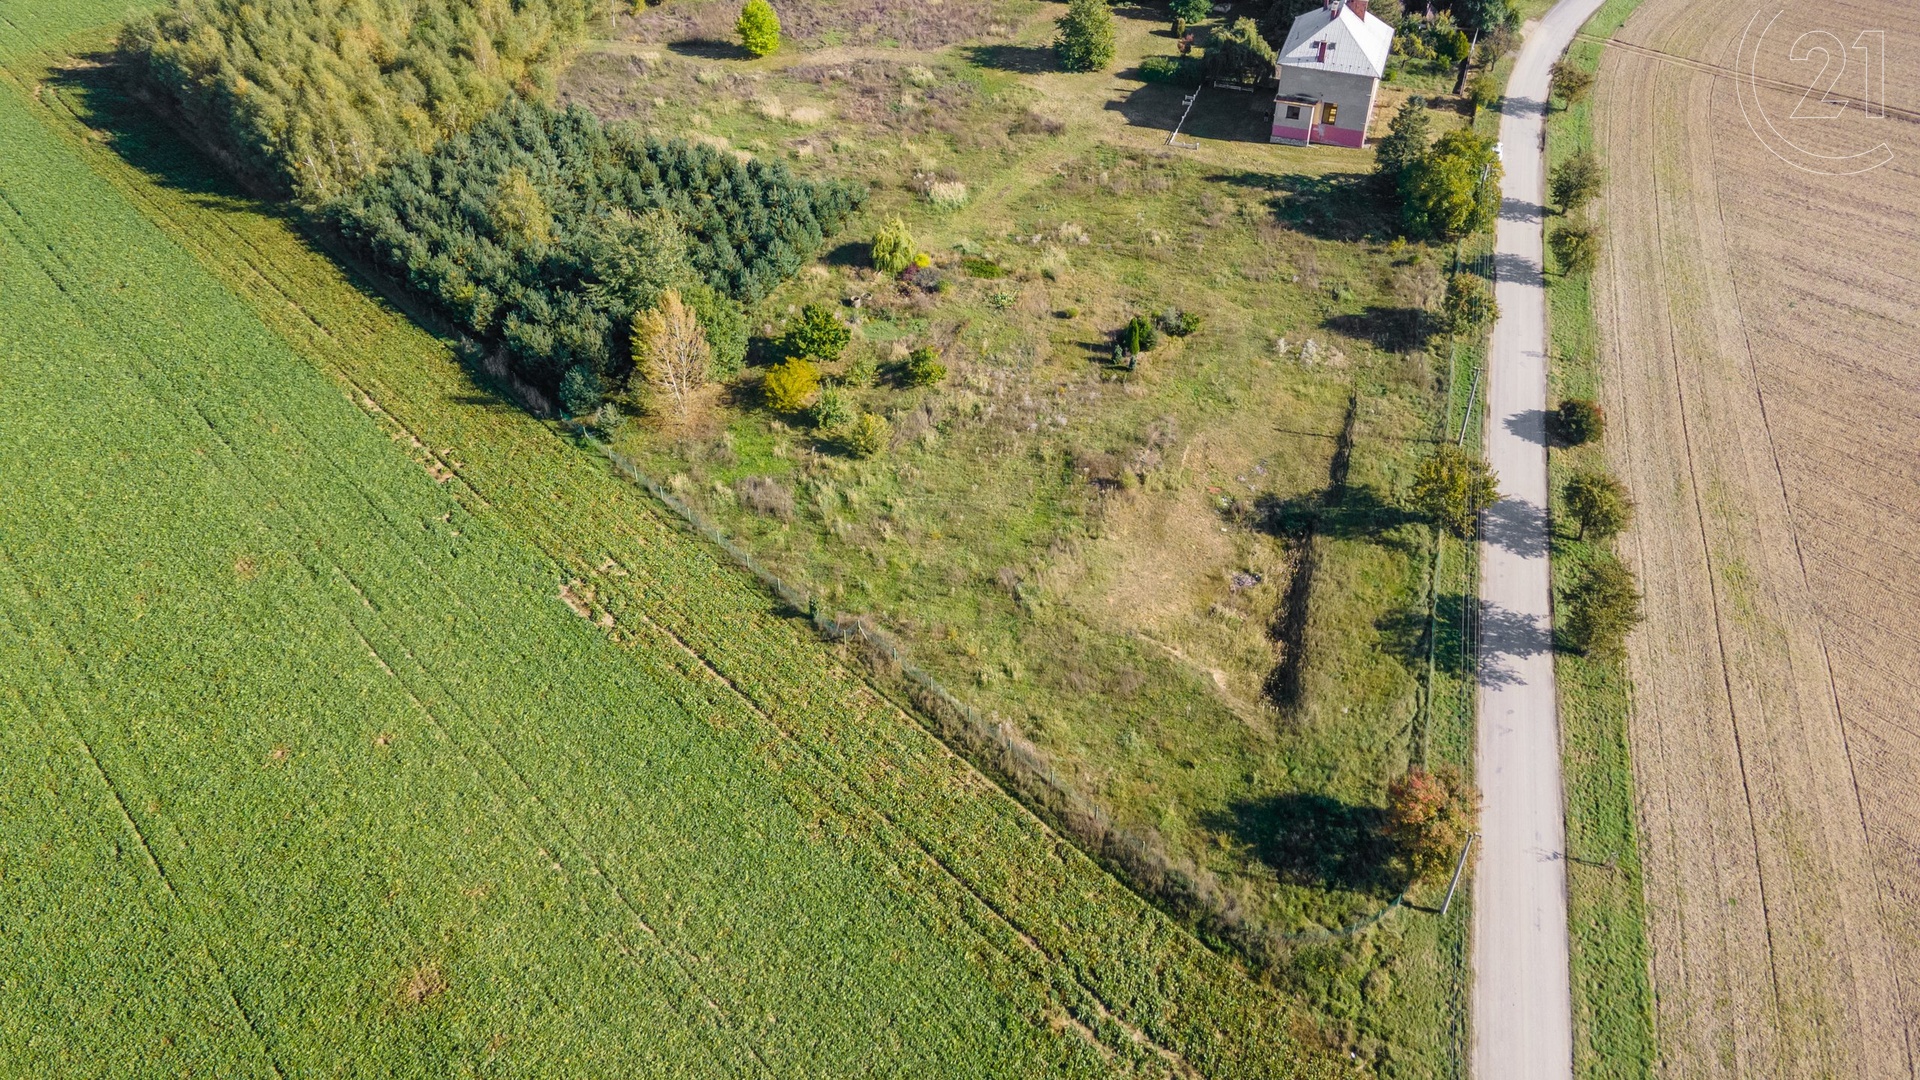 Prodej stavebního pozemku číslo 16 (parc. číslo 340/29) , 1126 m² - Uničov - Renoty